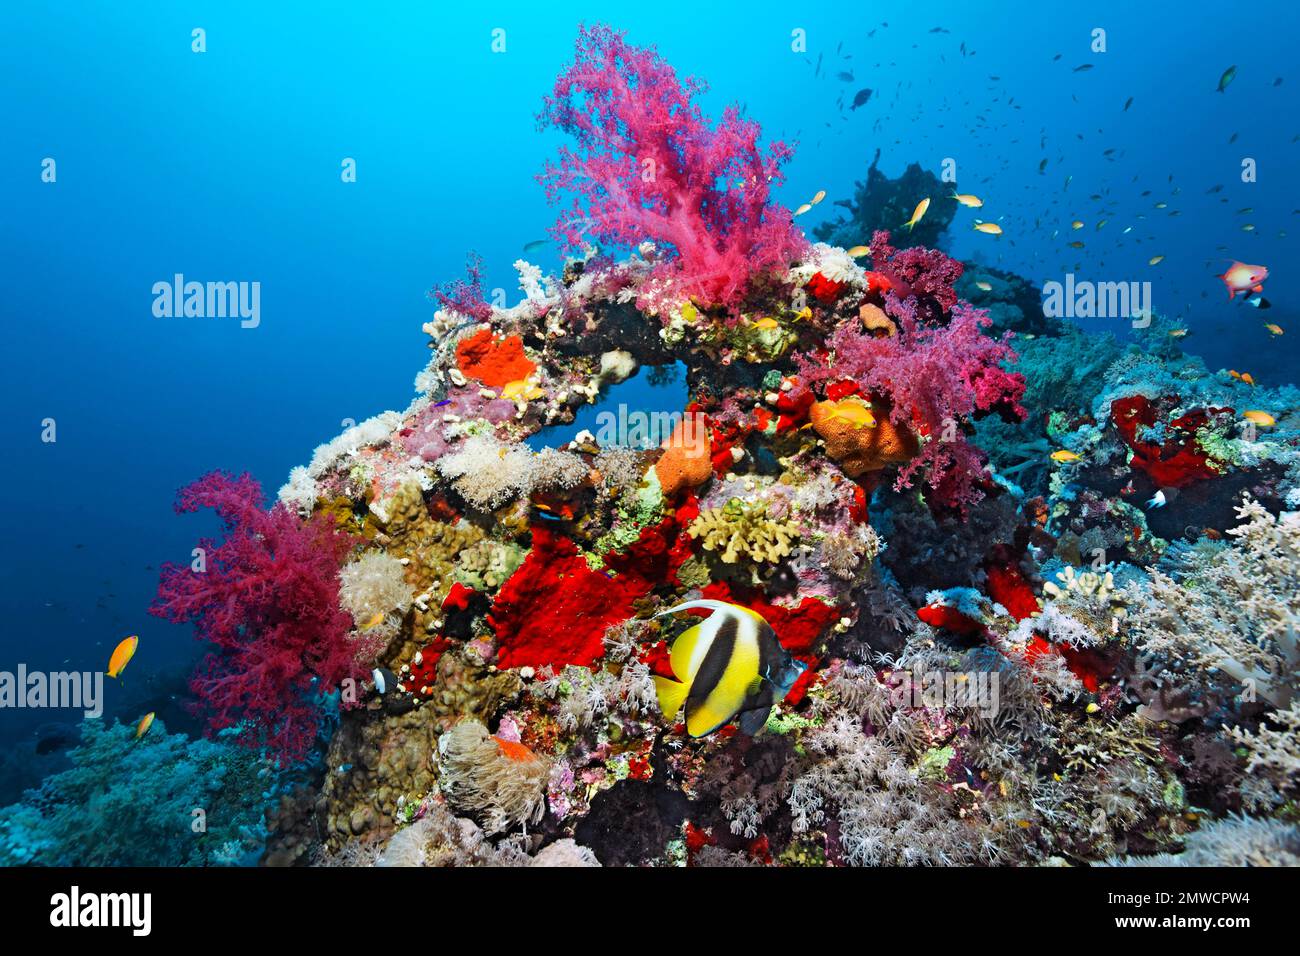 Tipica barriera corallina con diversi coralli molli (Alcyonacea), coralli di pietra (Scleractinia), e spugna (Porifera), pesce balsamo rosso (Heniochus Foto Stock